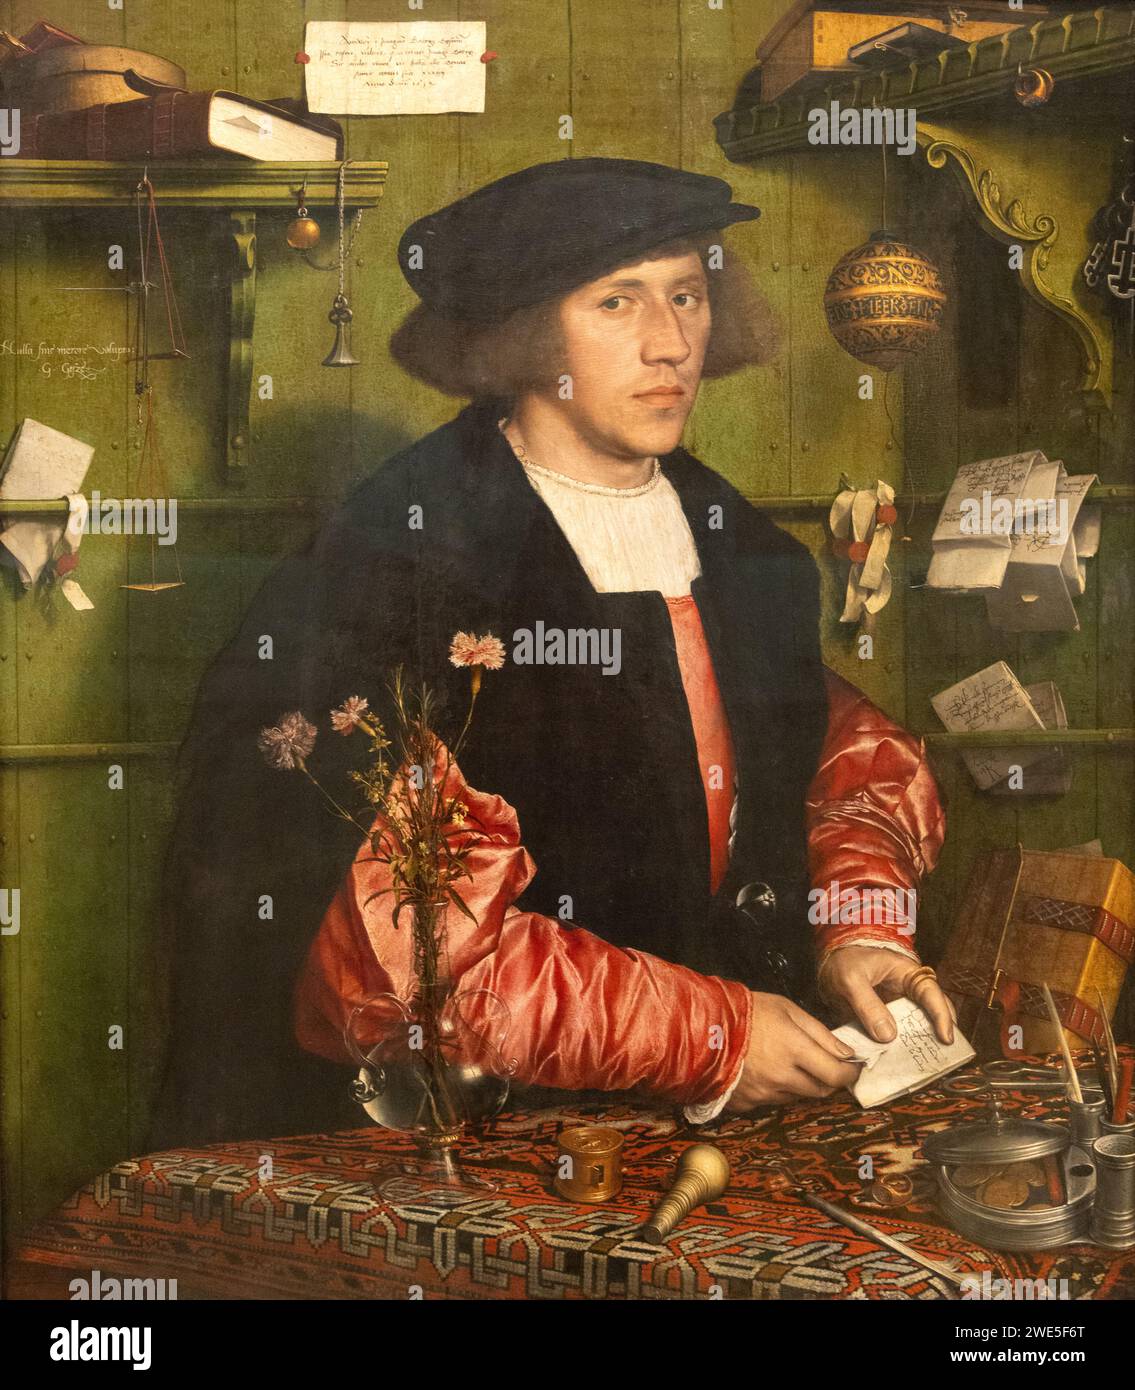 Hans Holbein la peinture la plus jeune ; 'le marchand Georg Giese ou Gisze ; 1532. Portrait du 16e siècle, huile sur bois. Banque D'Images